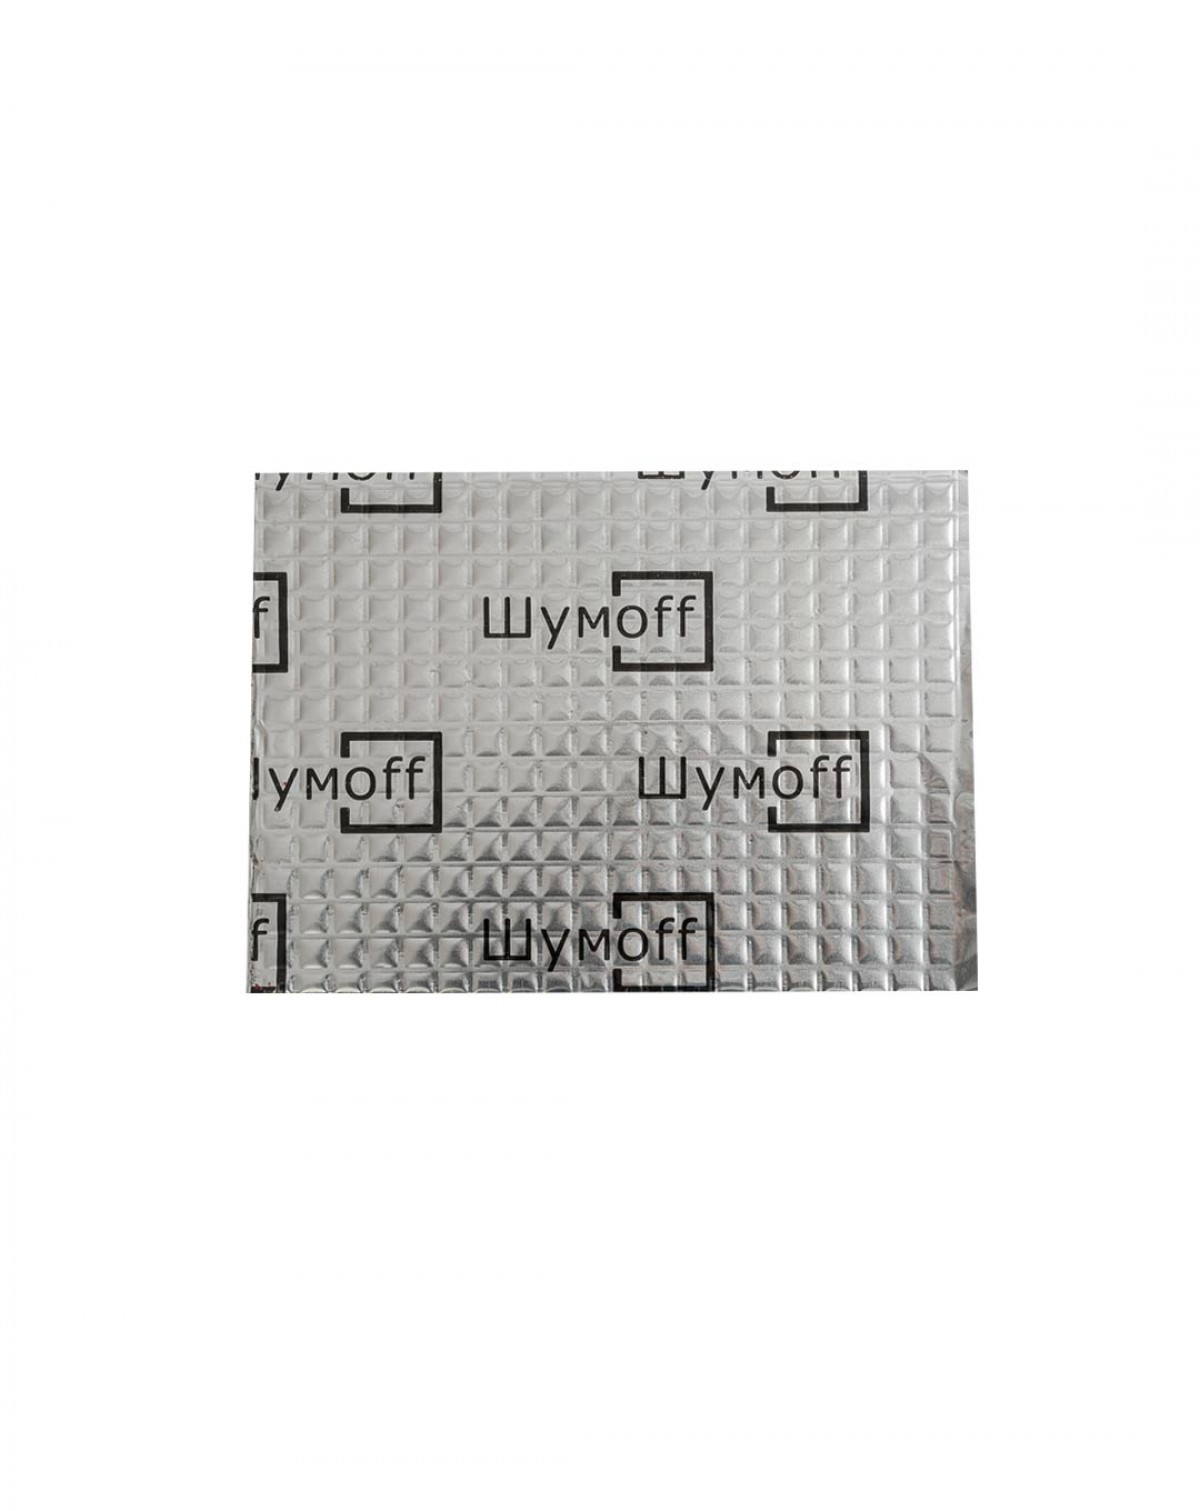 Вибропоглощающий материал для авто Шумофф М2 толщина - 2 мм, 100 мкм (5 листов)